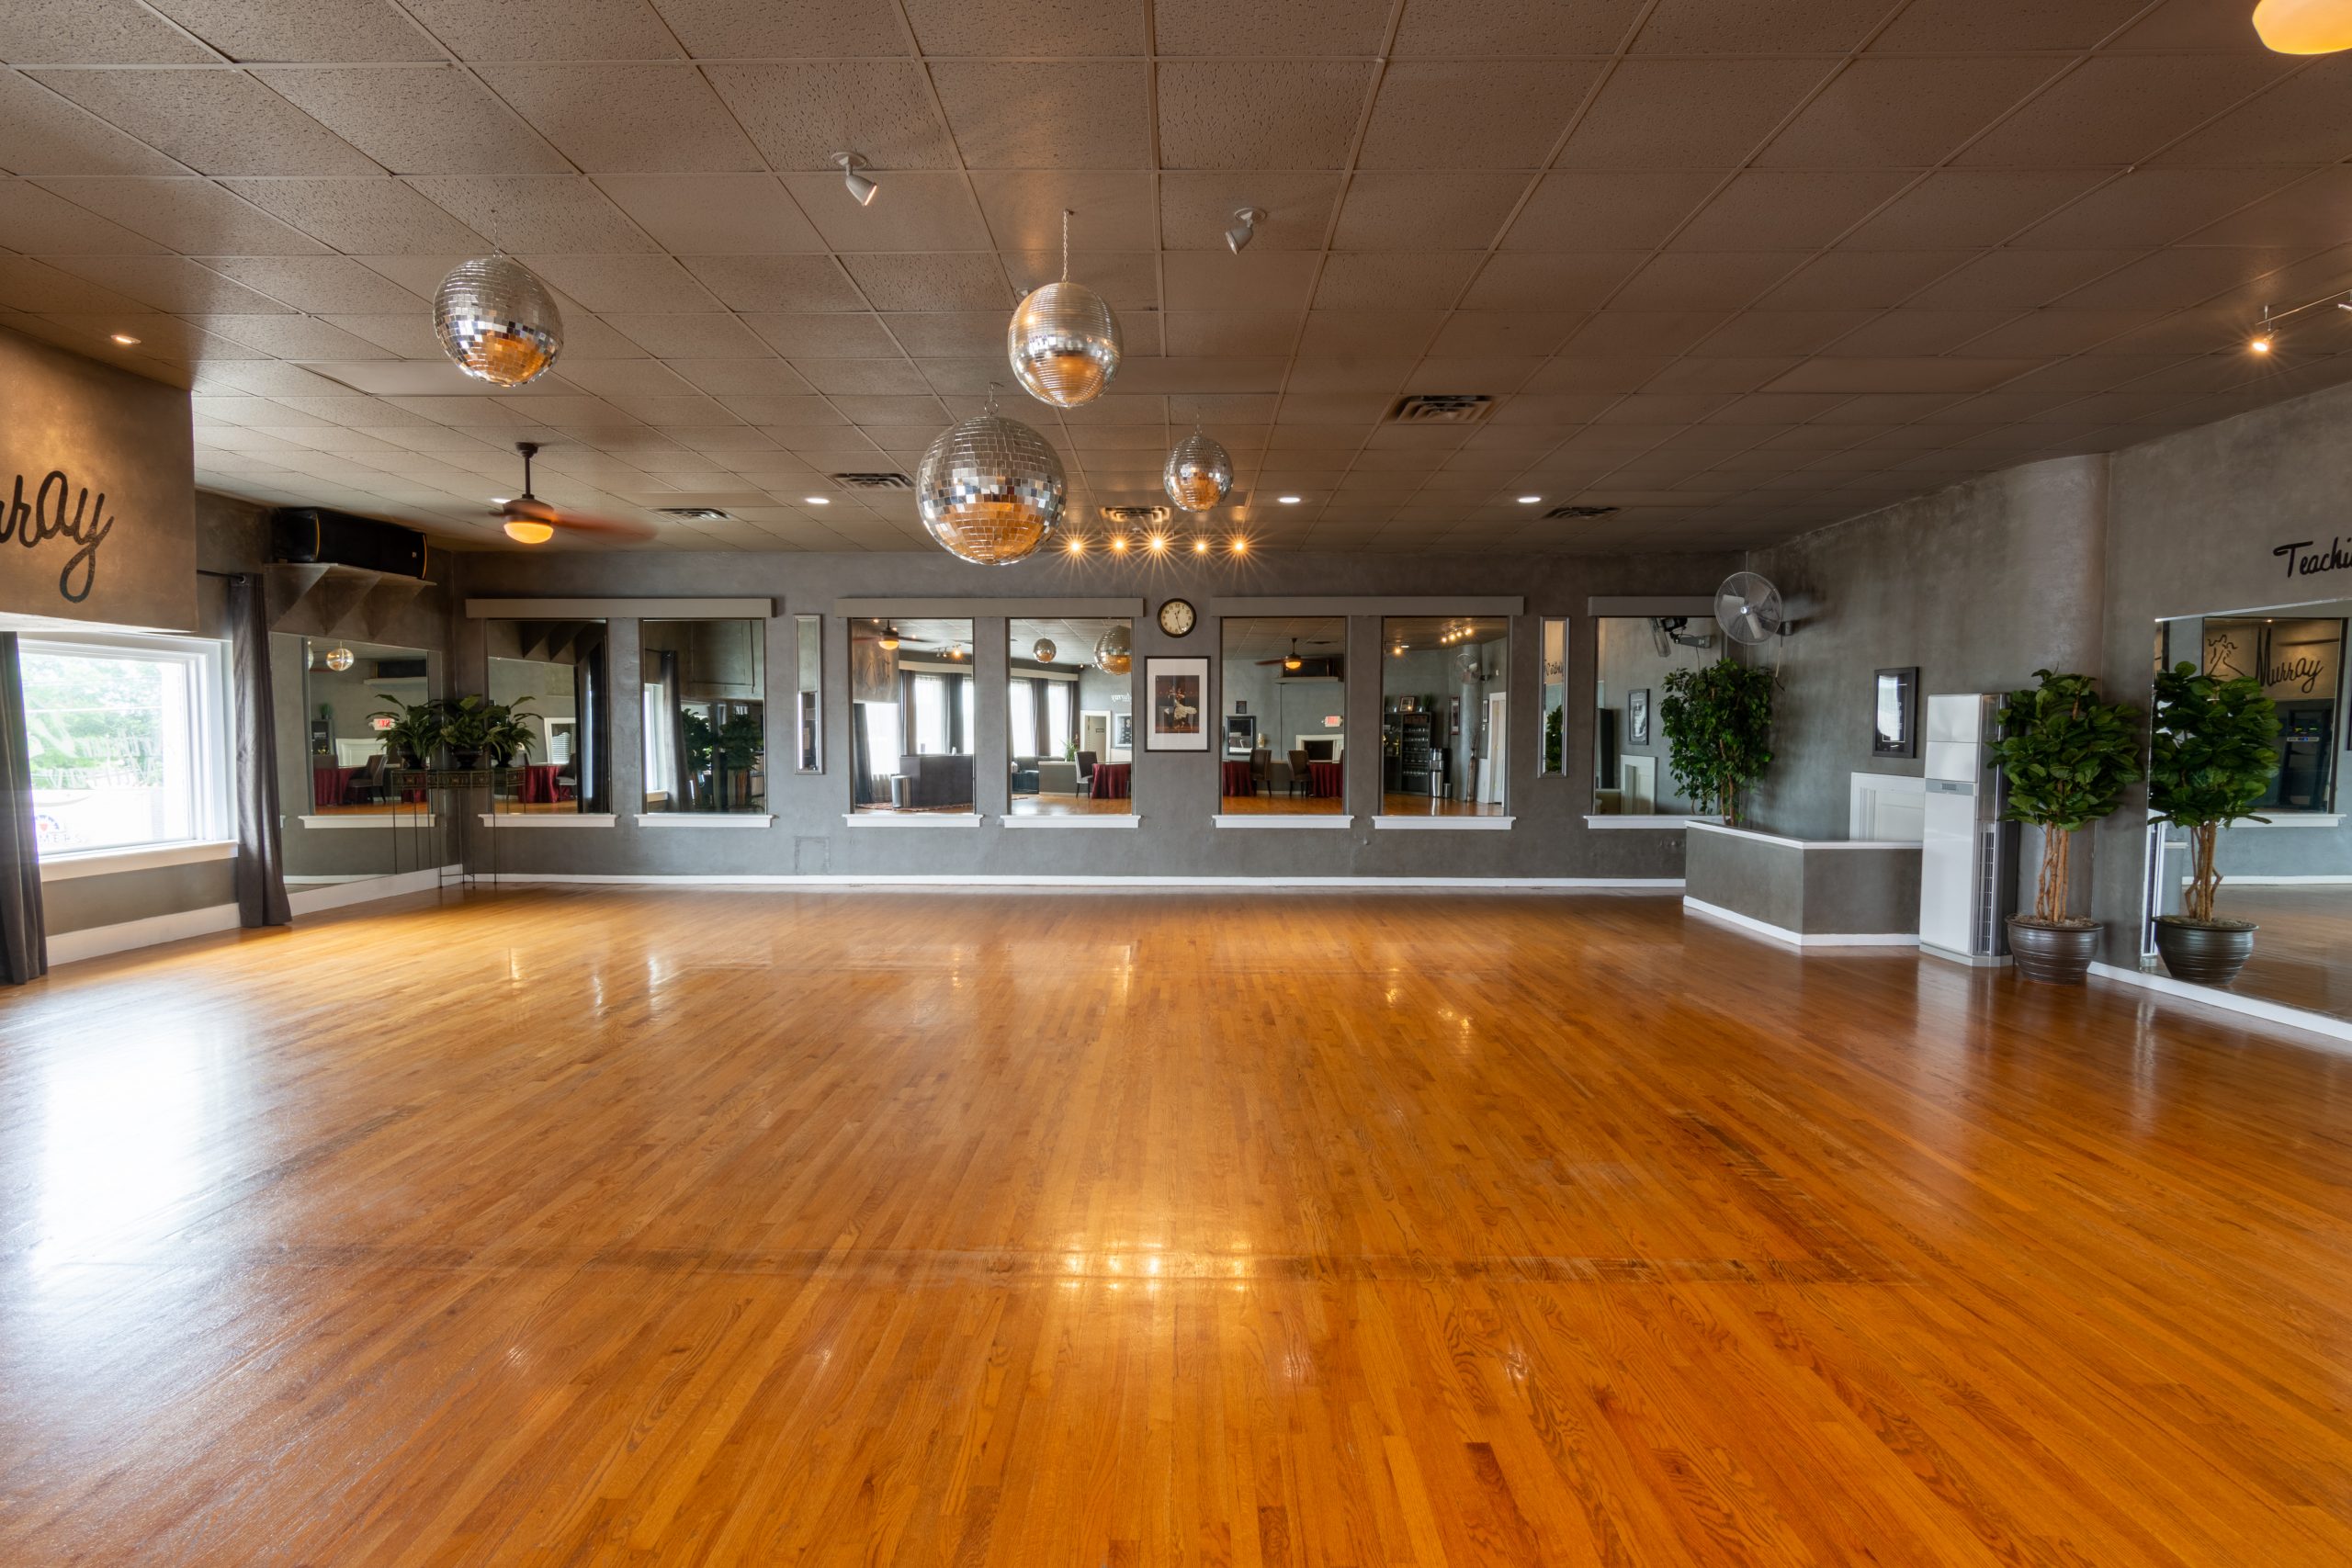 Ballroom Dance floor at Arthur Murray Dance Studio of Kansas City Lenexa KS